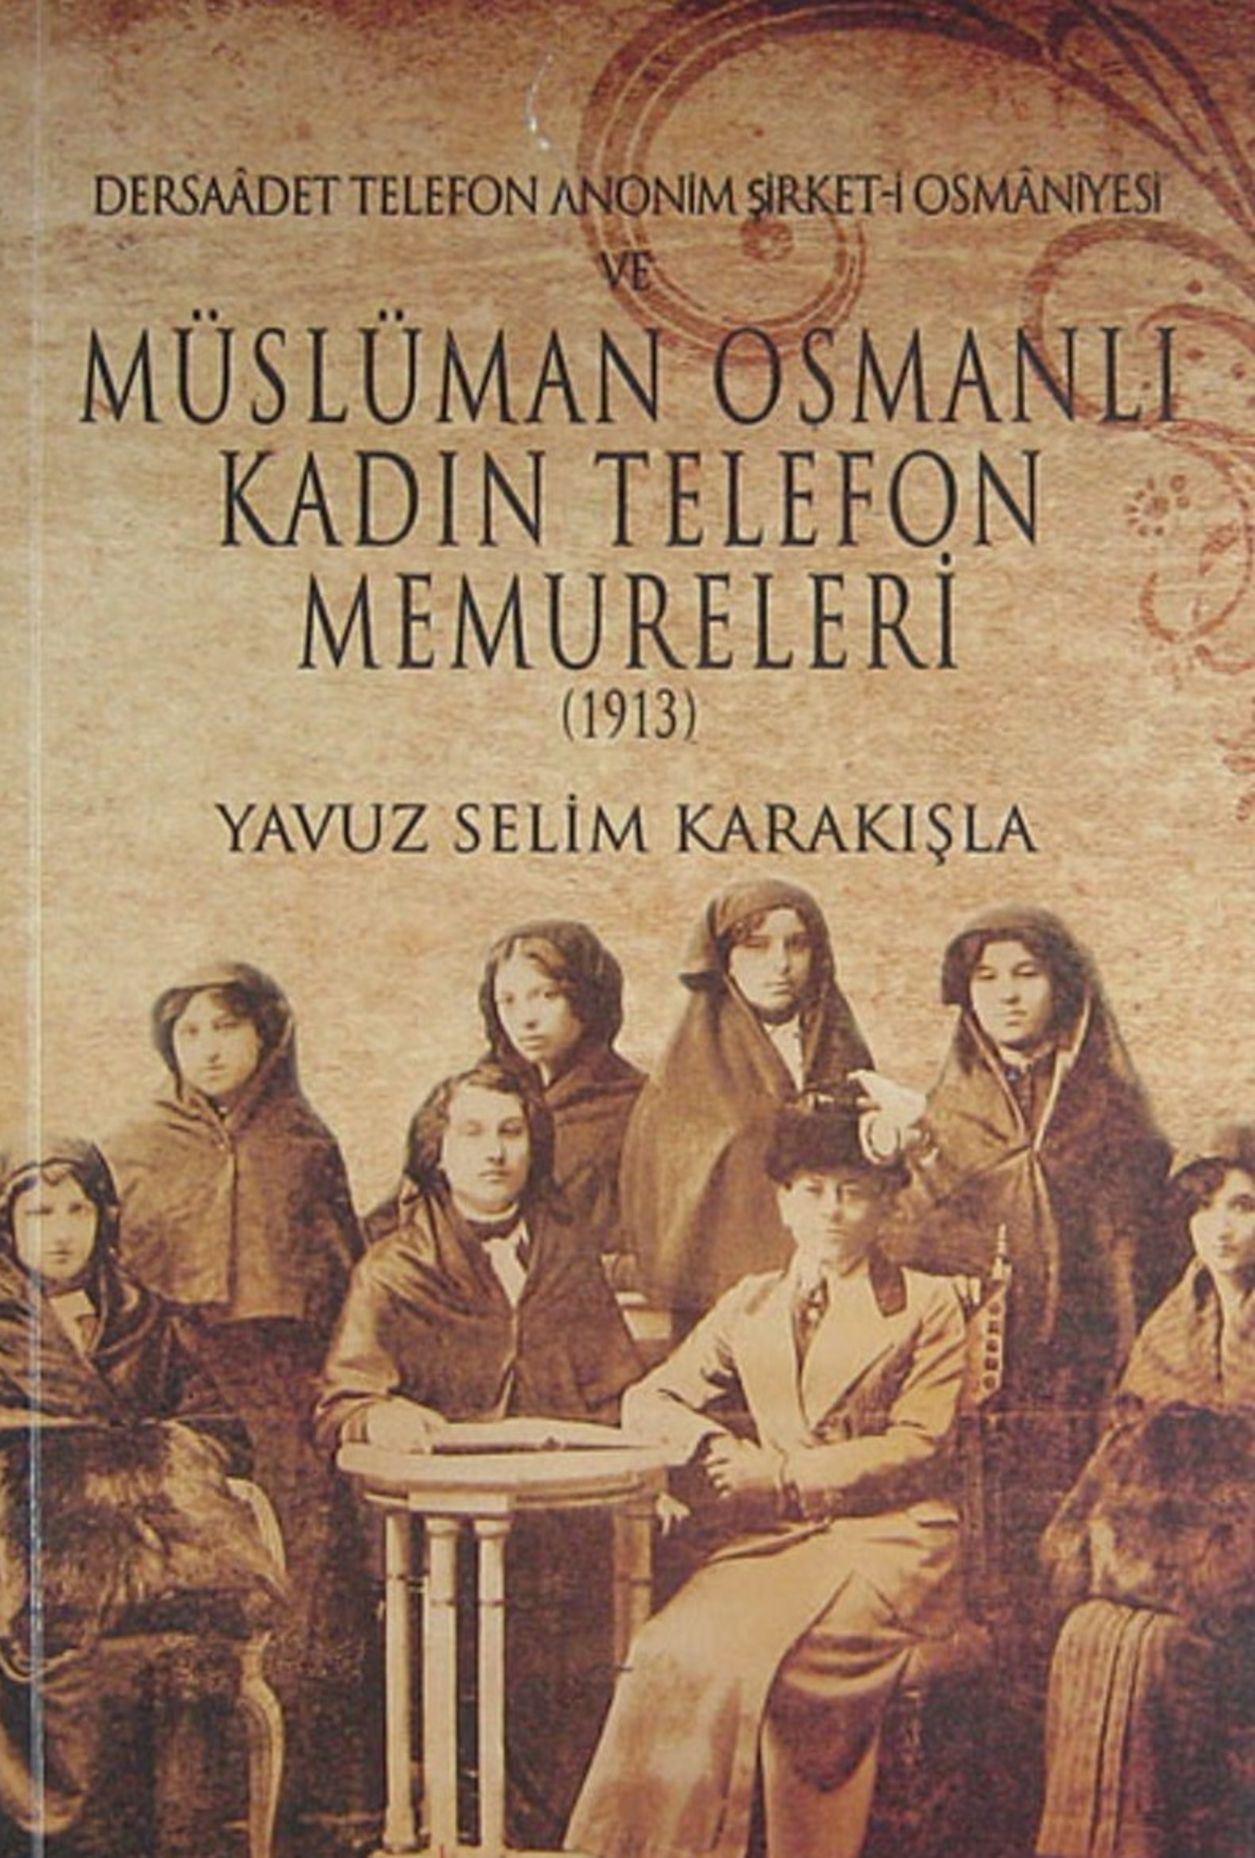 Dersaadet Telefon Anonim Şirket-i Osmaniyesi'nde çalışan Türk kadınları Yavuz Selim Karakışla tarafından kitaplaştırıldı.